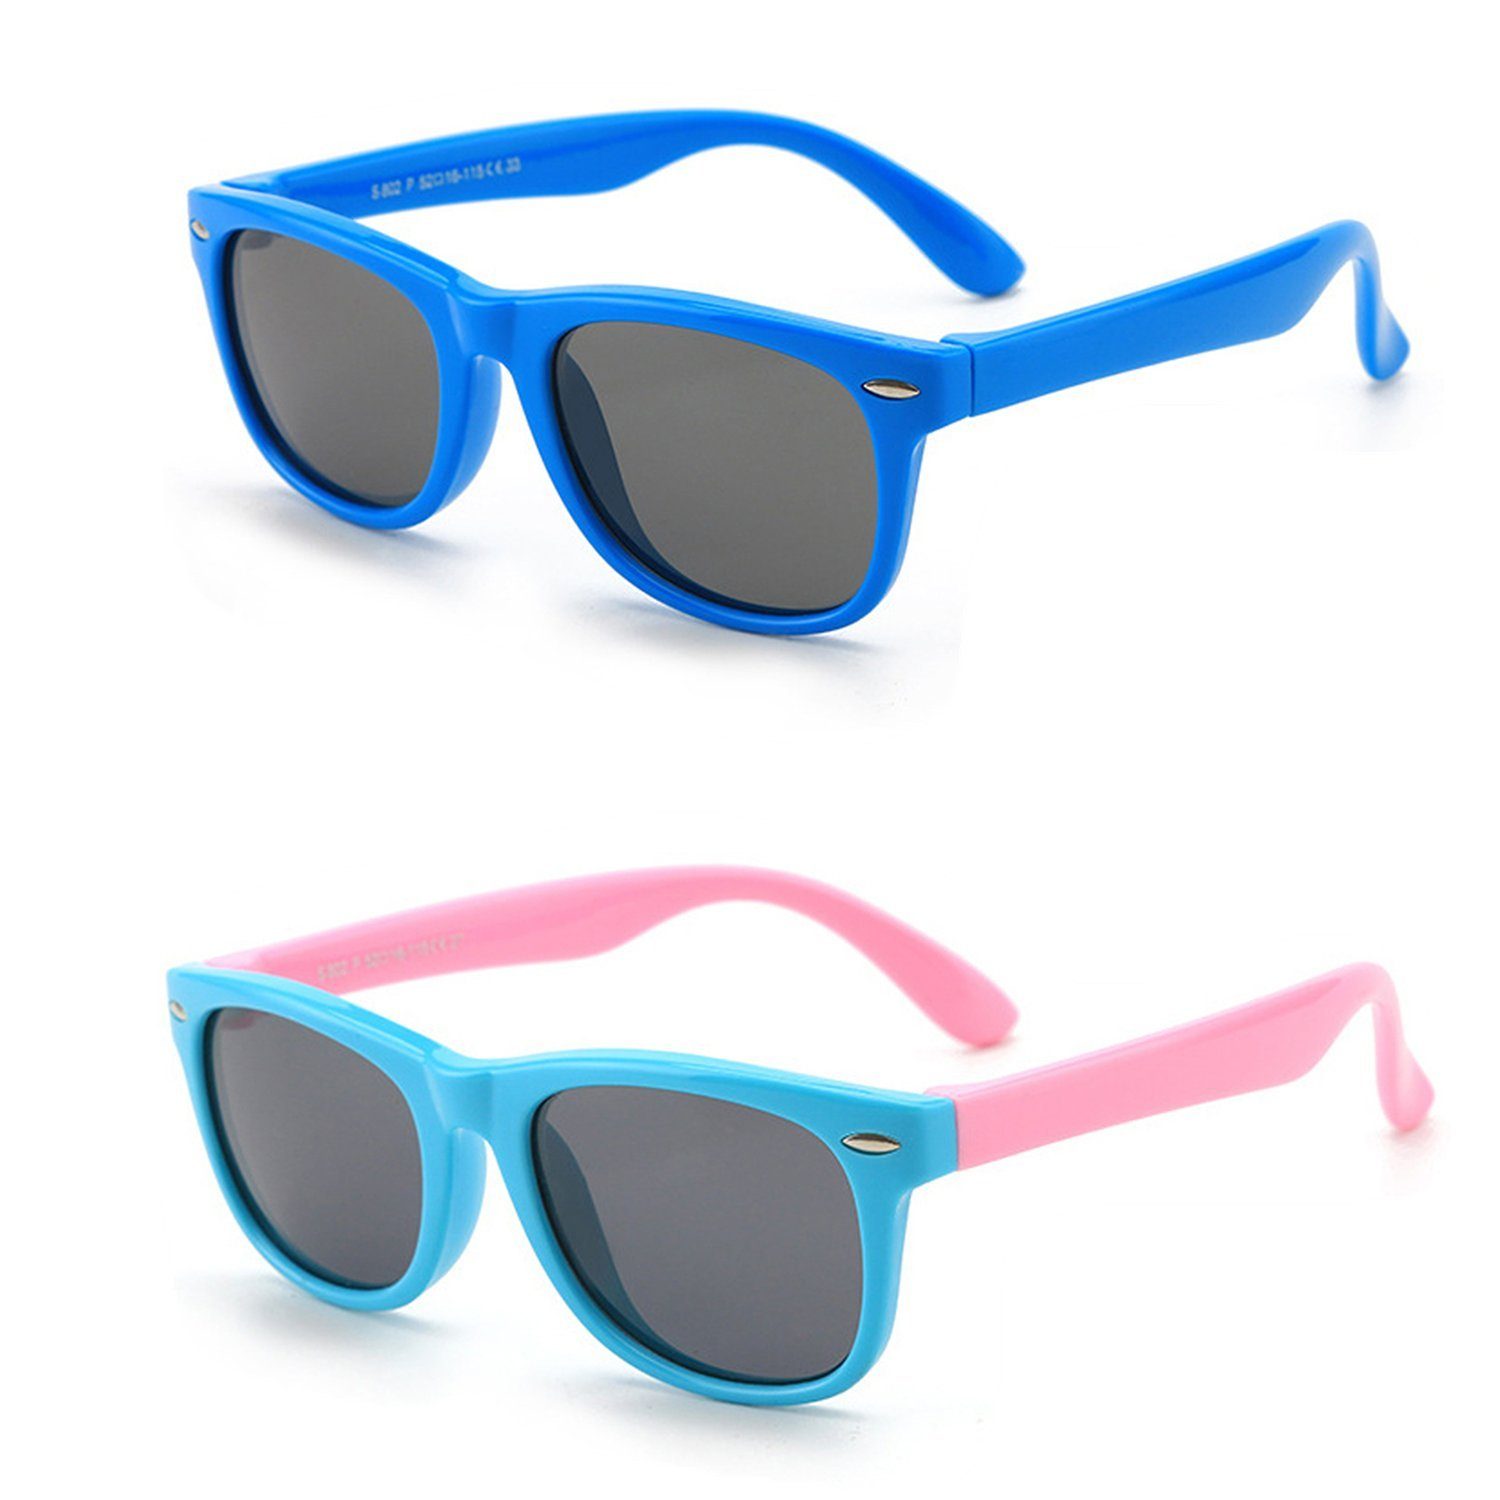 Olotos Sonnenbrille Sonnenbrille für Kinder Mädchen Jungen Gummi 100% UV400 Schutz Brille Blau+Hellblau